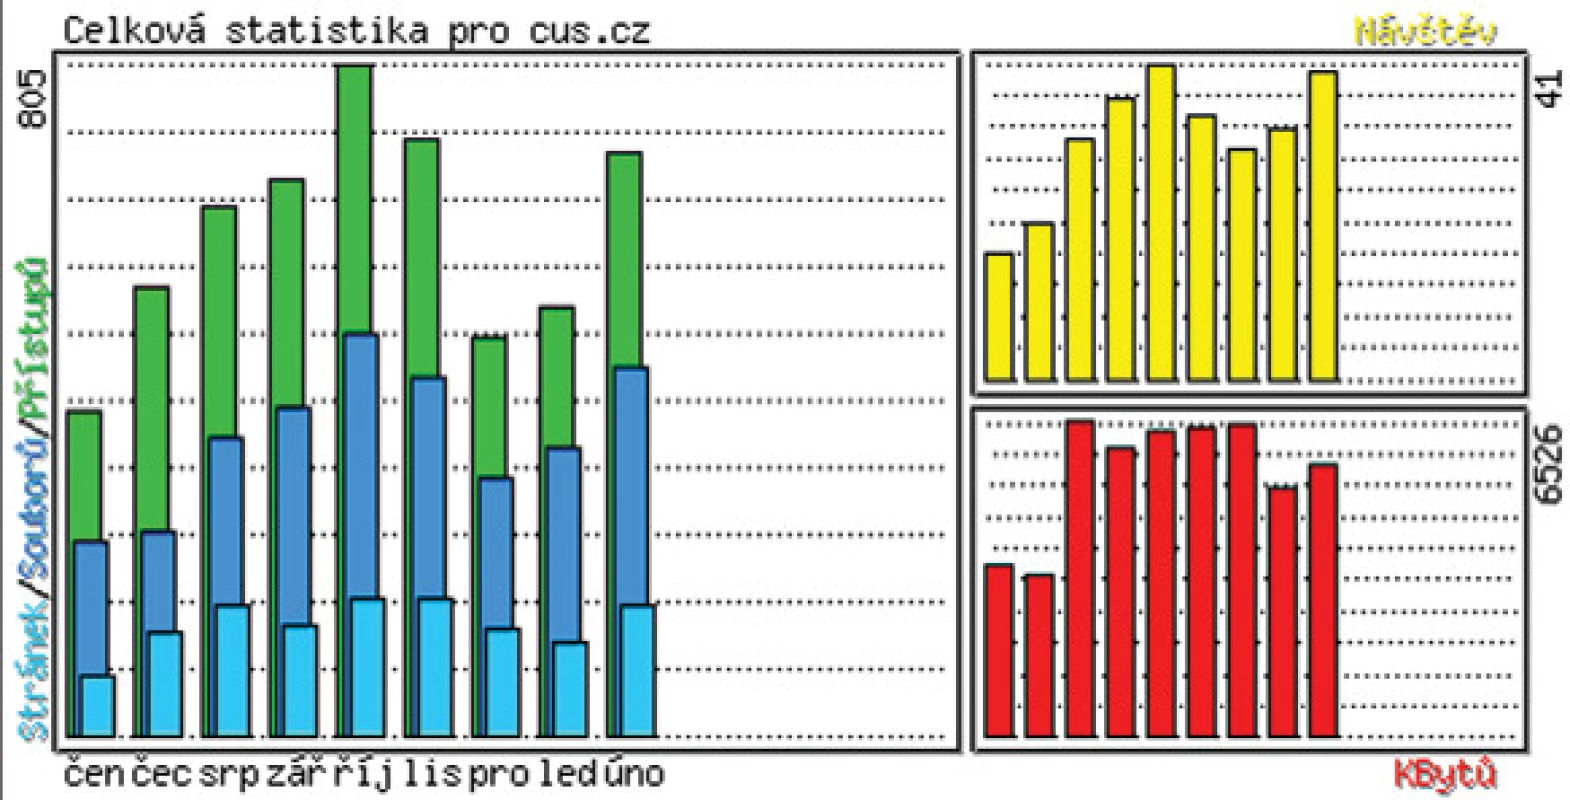 Celková statistika pro adresu www.cus.cz v období červen 2005–únor 2006.